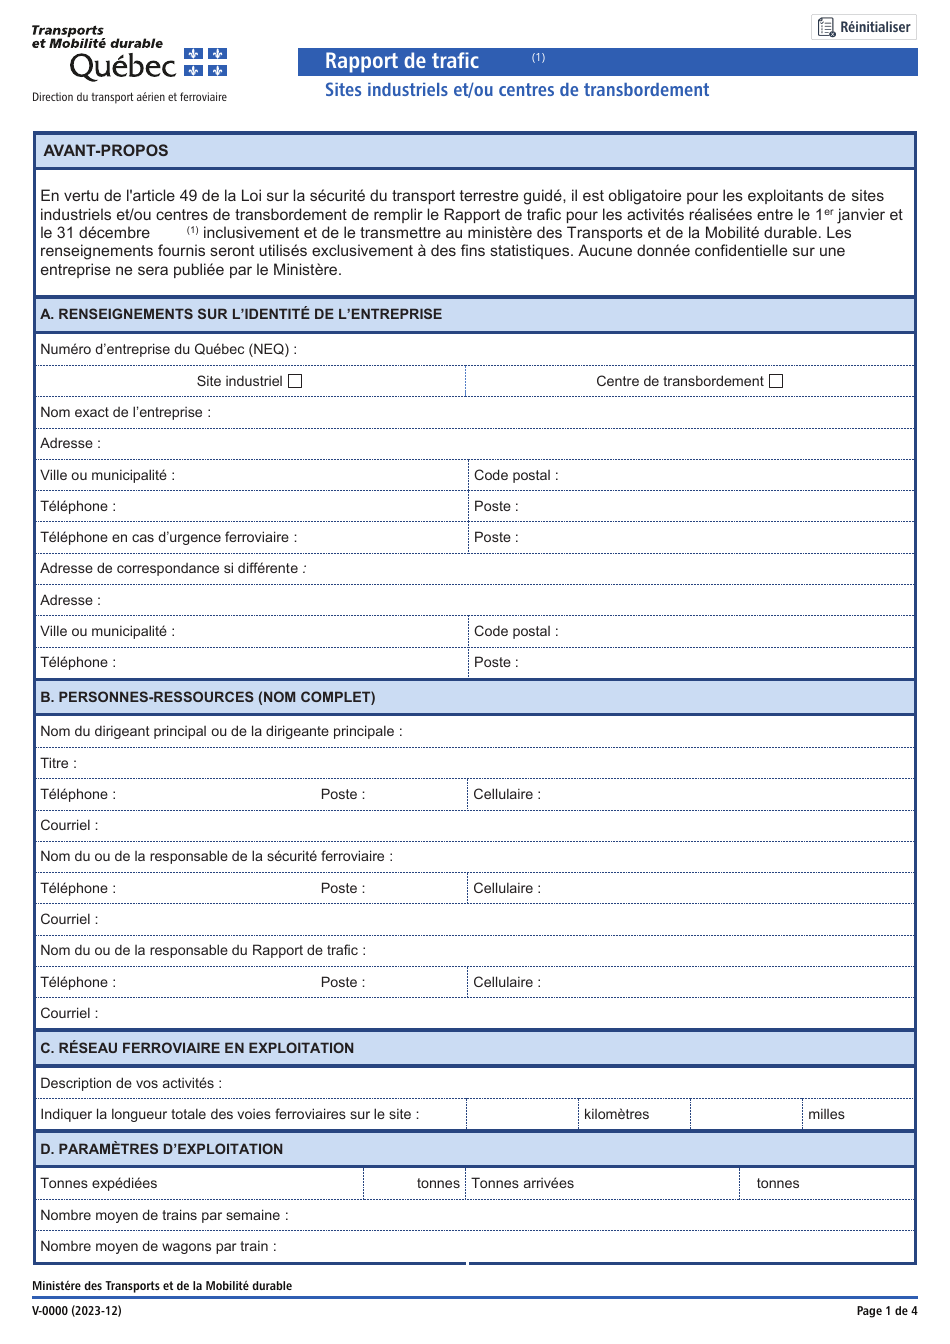 Forme V-0000 Rapport De Trafic - Sites Industriels Et / Ou Centres De Transbordement - Quebec, Canada (French), Page 1